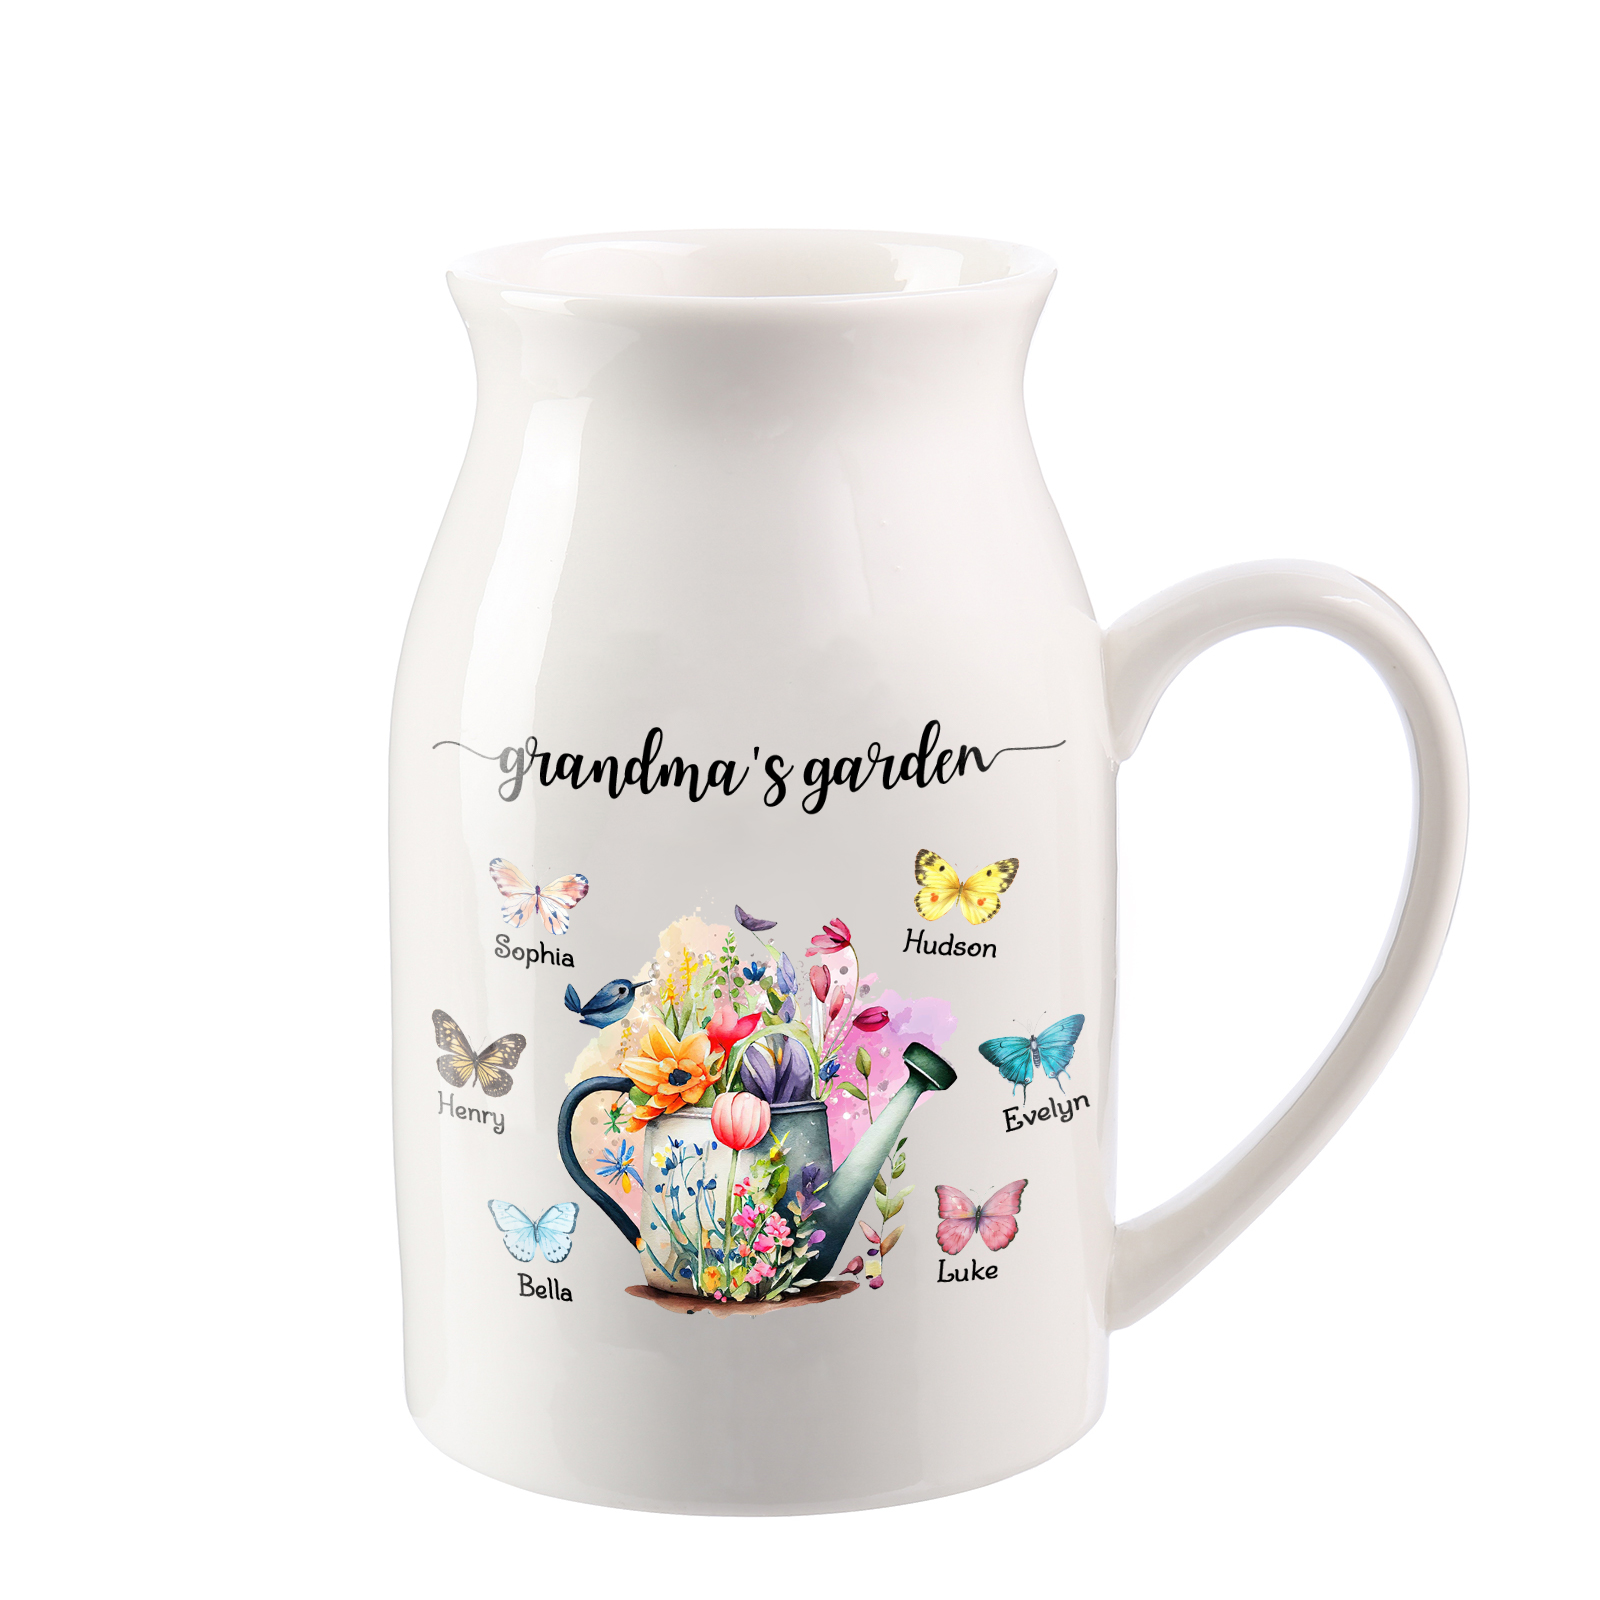 6 Names - Personalized Name "Grandma's Garden" Ceramic Vase as a Gift for Grandma